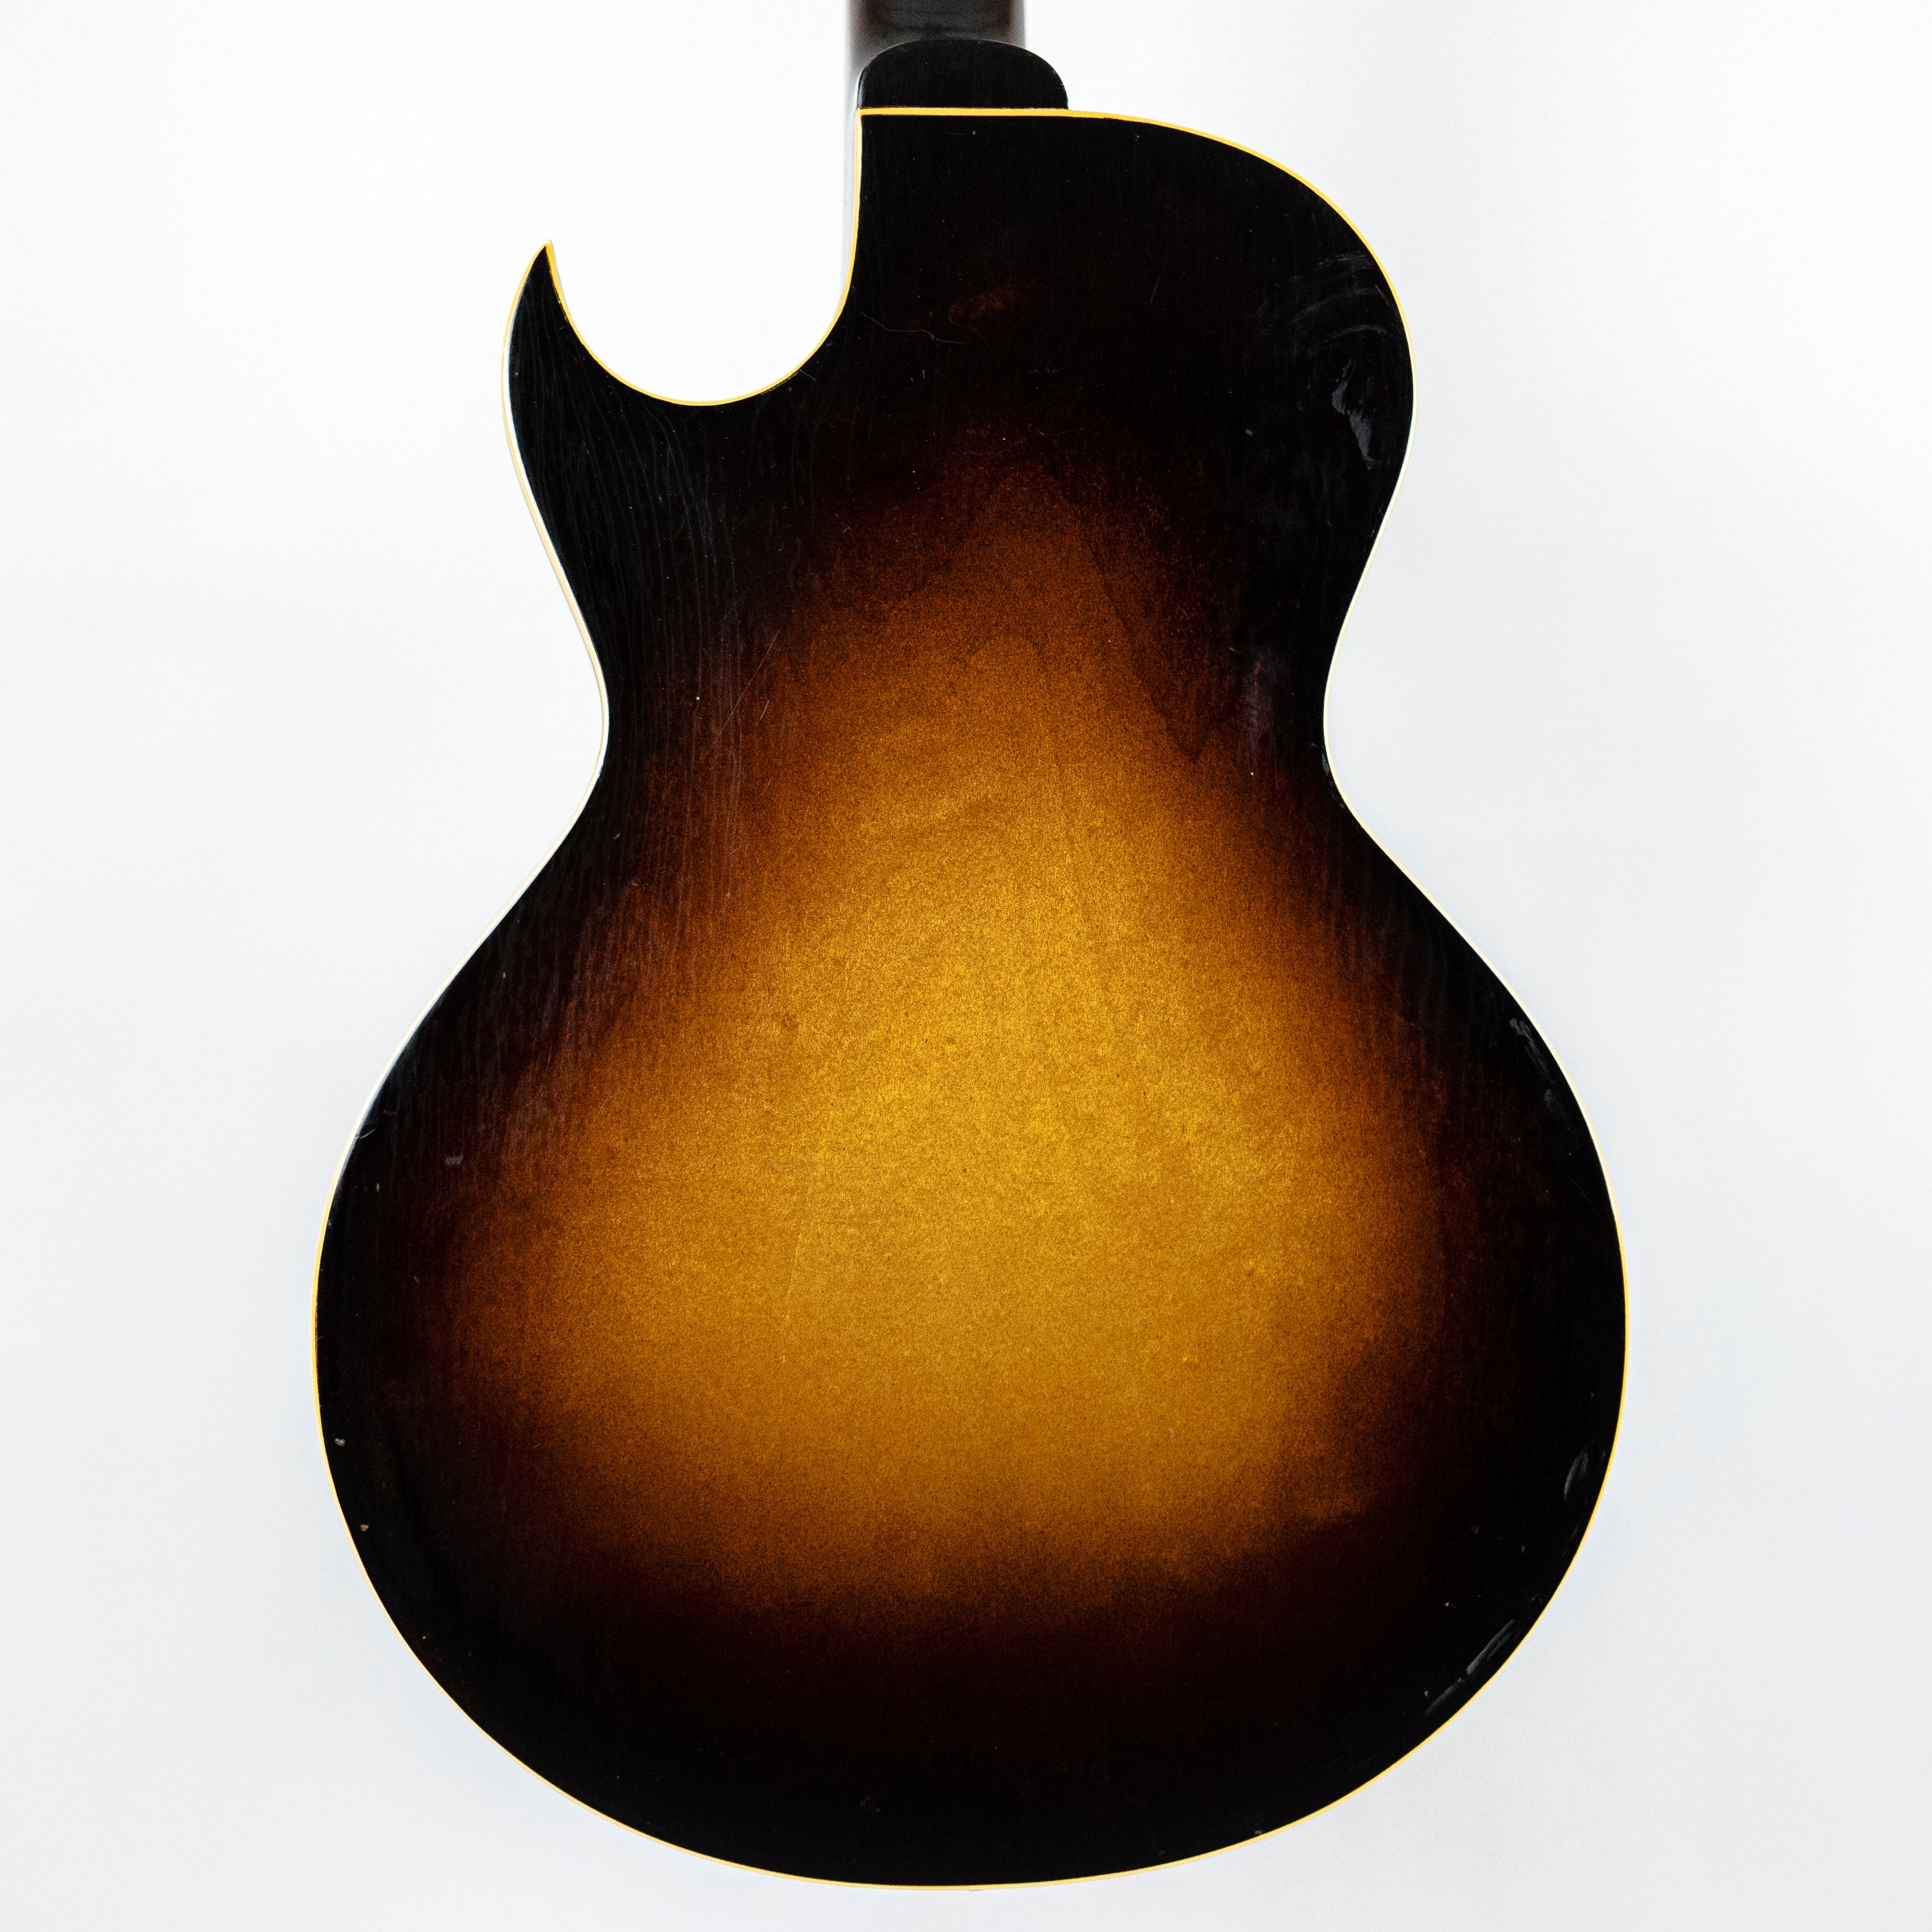 Gibson 1952 ES-140 3/4 Sunburst